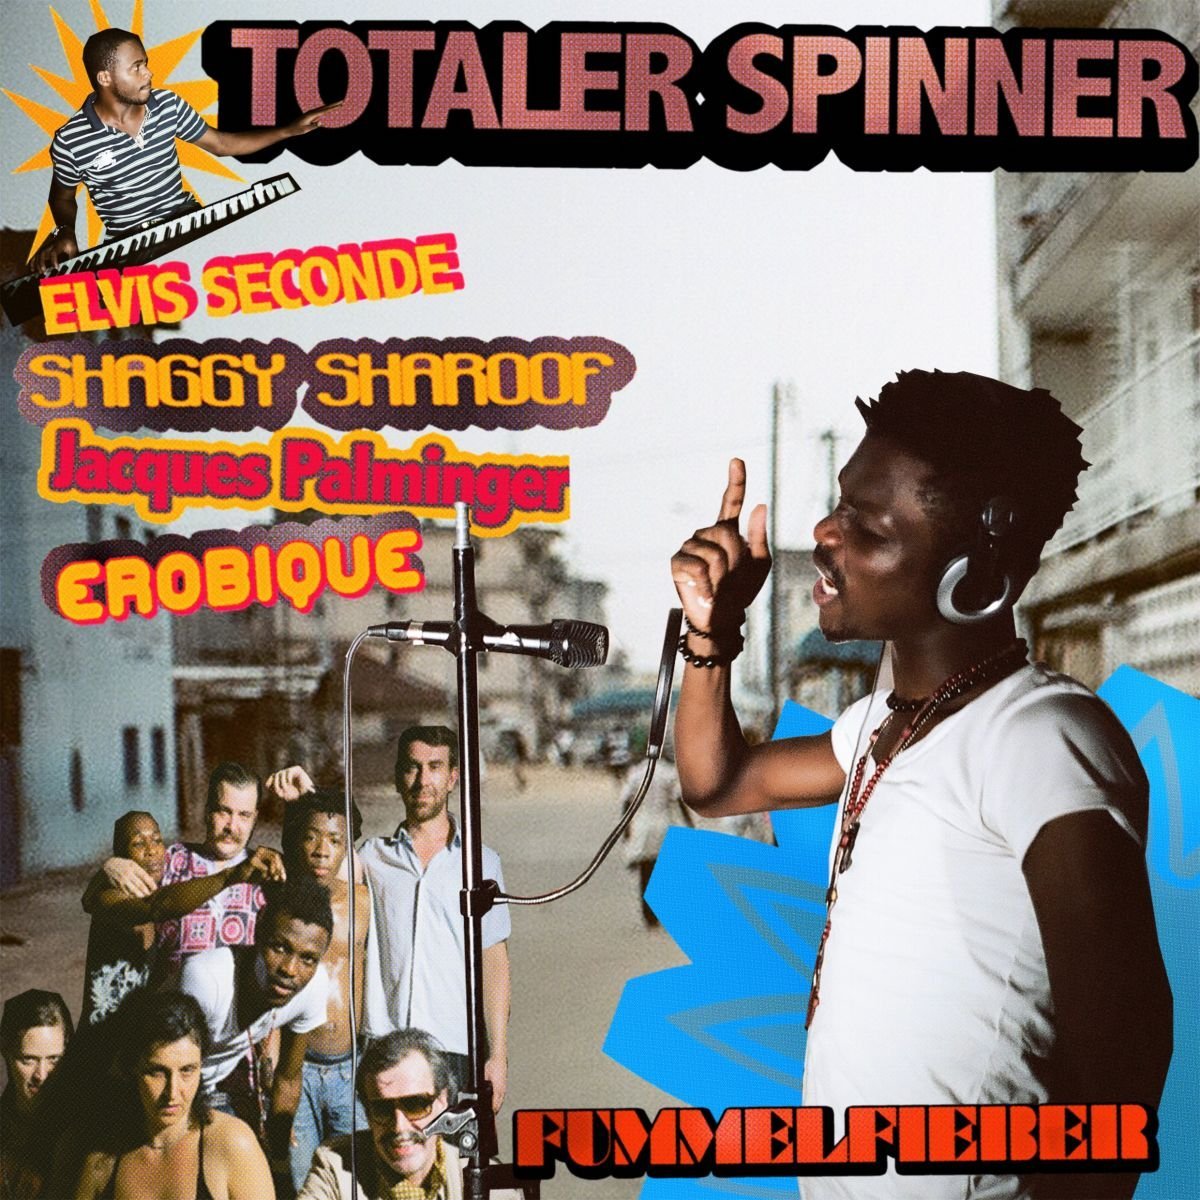 Elvis Seconde / Shaggy Sharoof / Jacques Palminger / Erobique ‎– "Totaler Spinner"